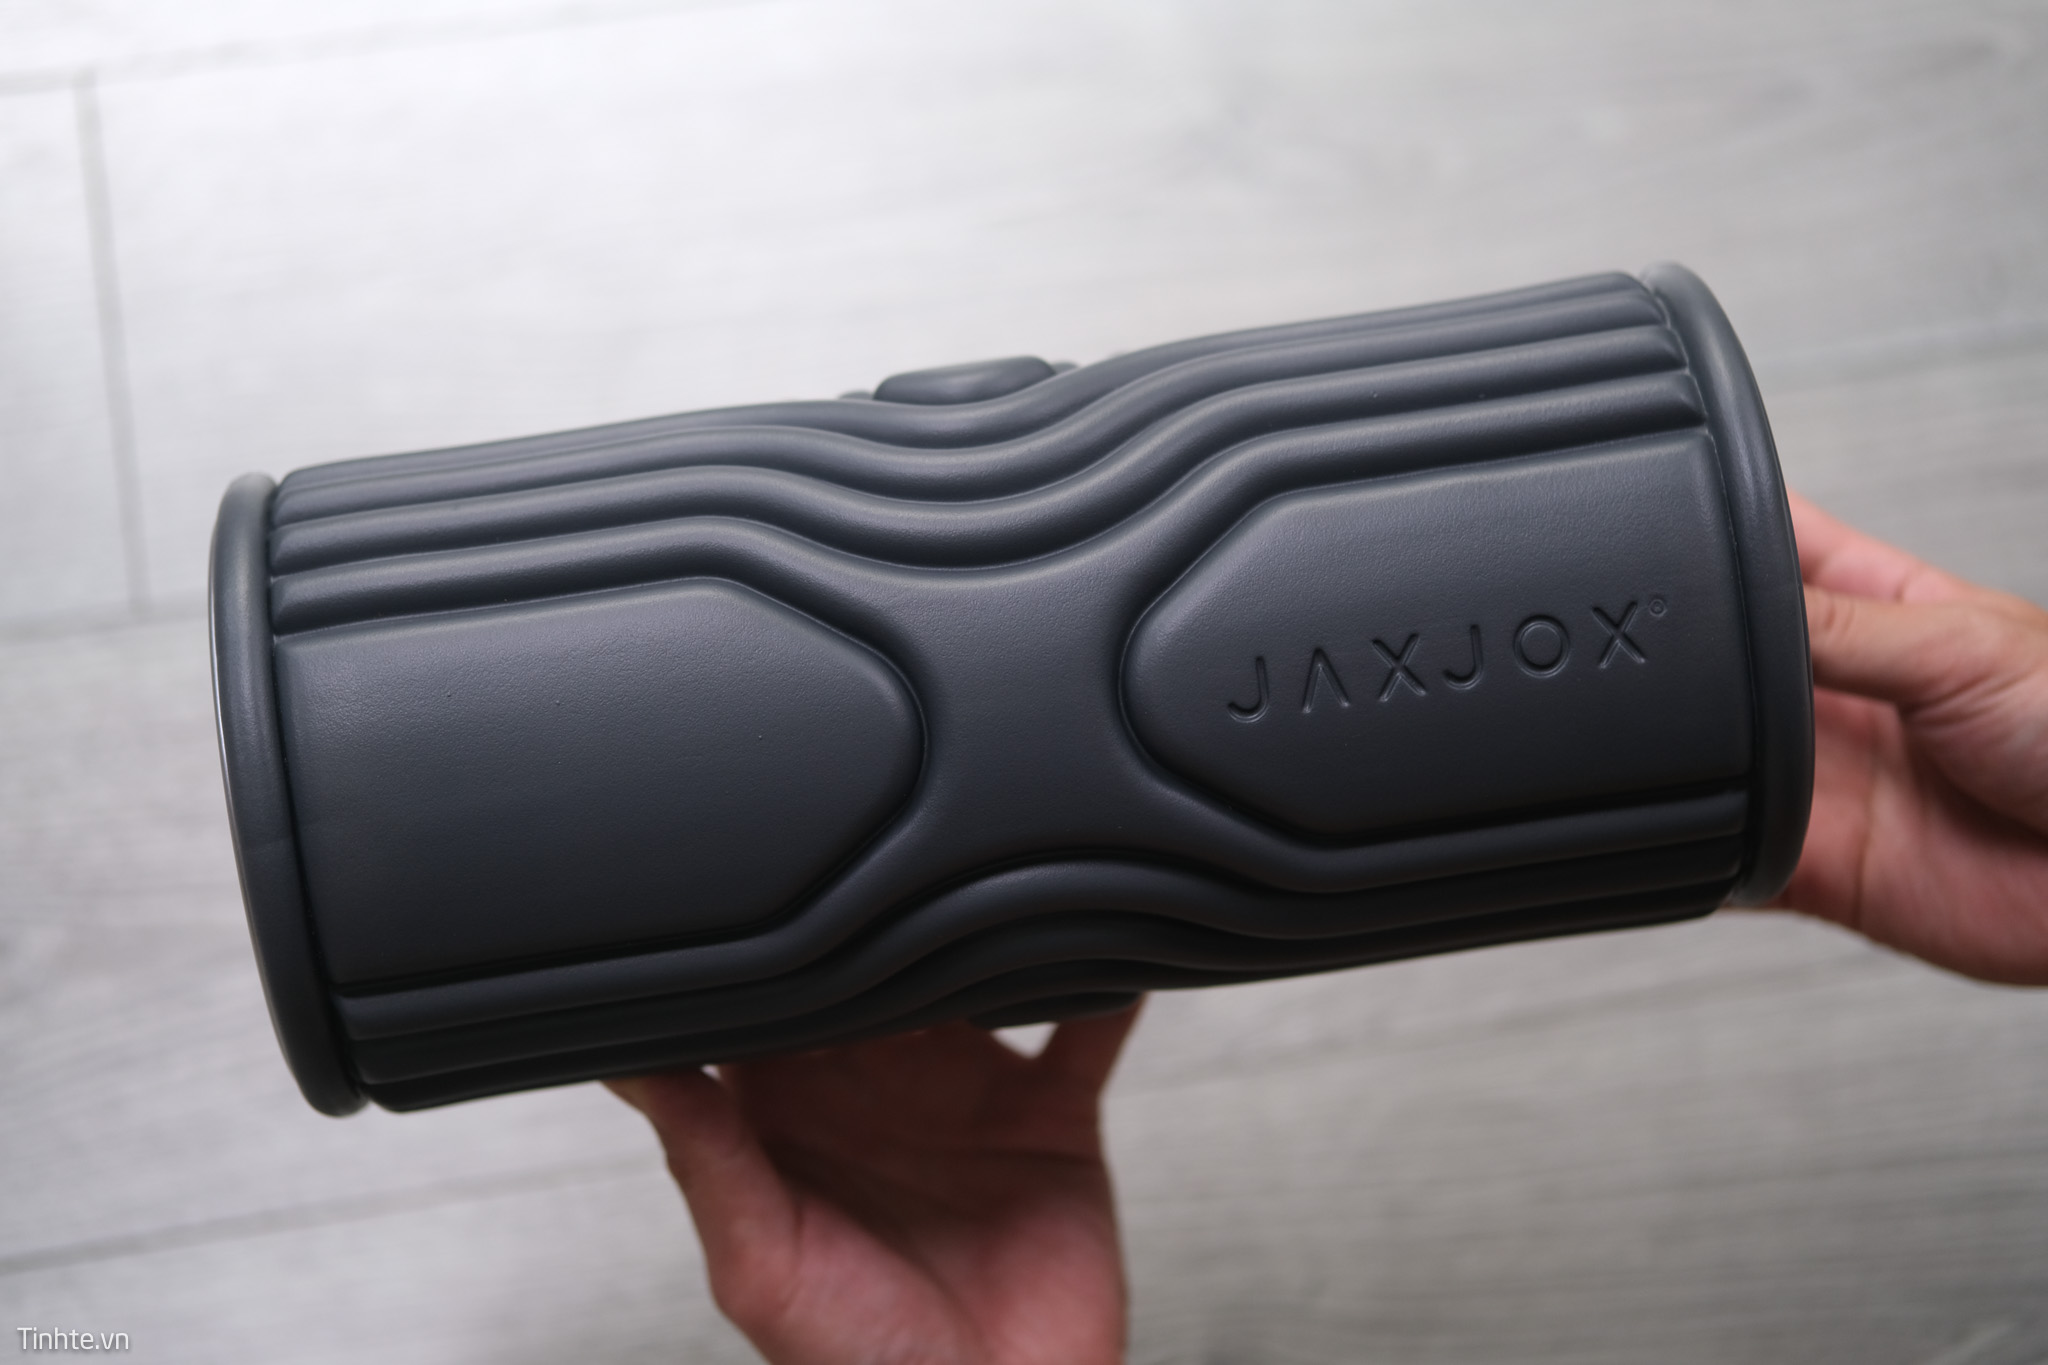 Trên tay JaxJox Foam RollerConnect: Thanh lăn massage thông minh giúp hồi phục sau khi chơi thể thao